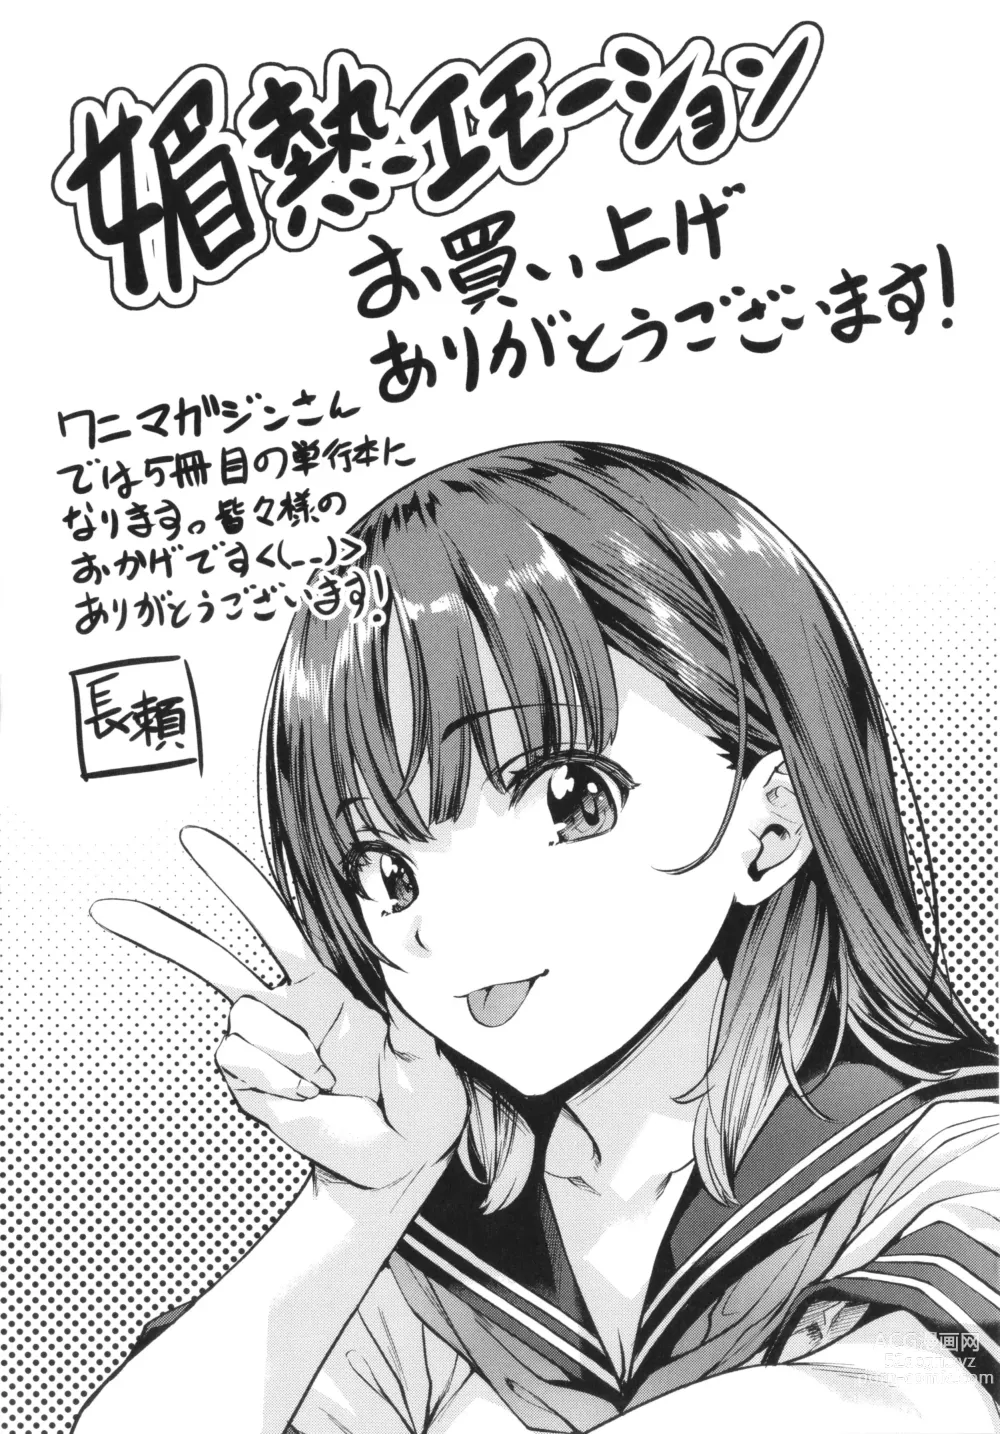 Page 193 of manga Binetsu Emotion - Sensual Emotion